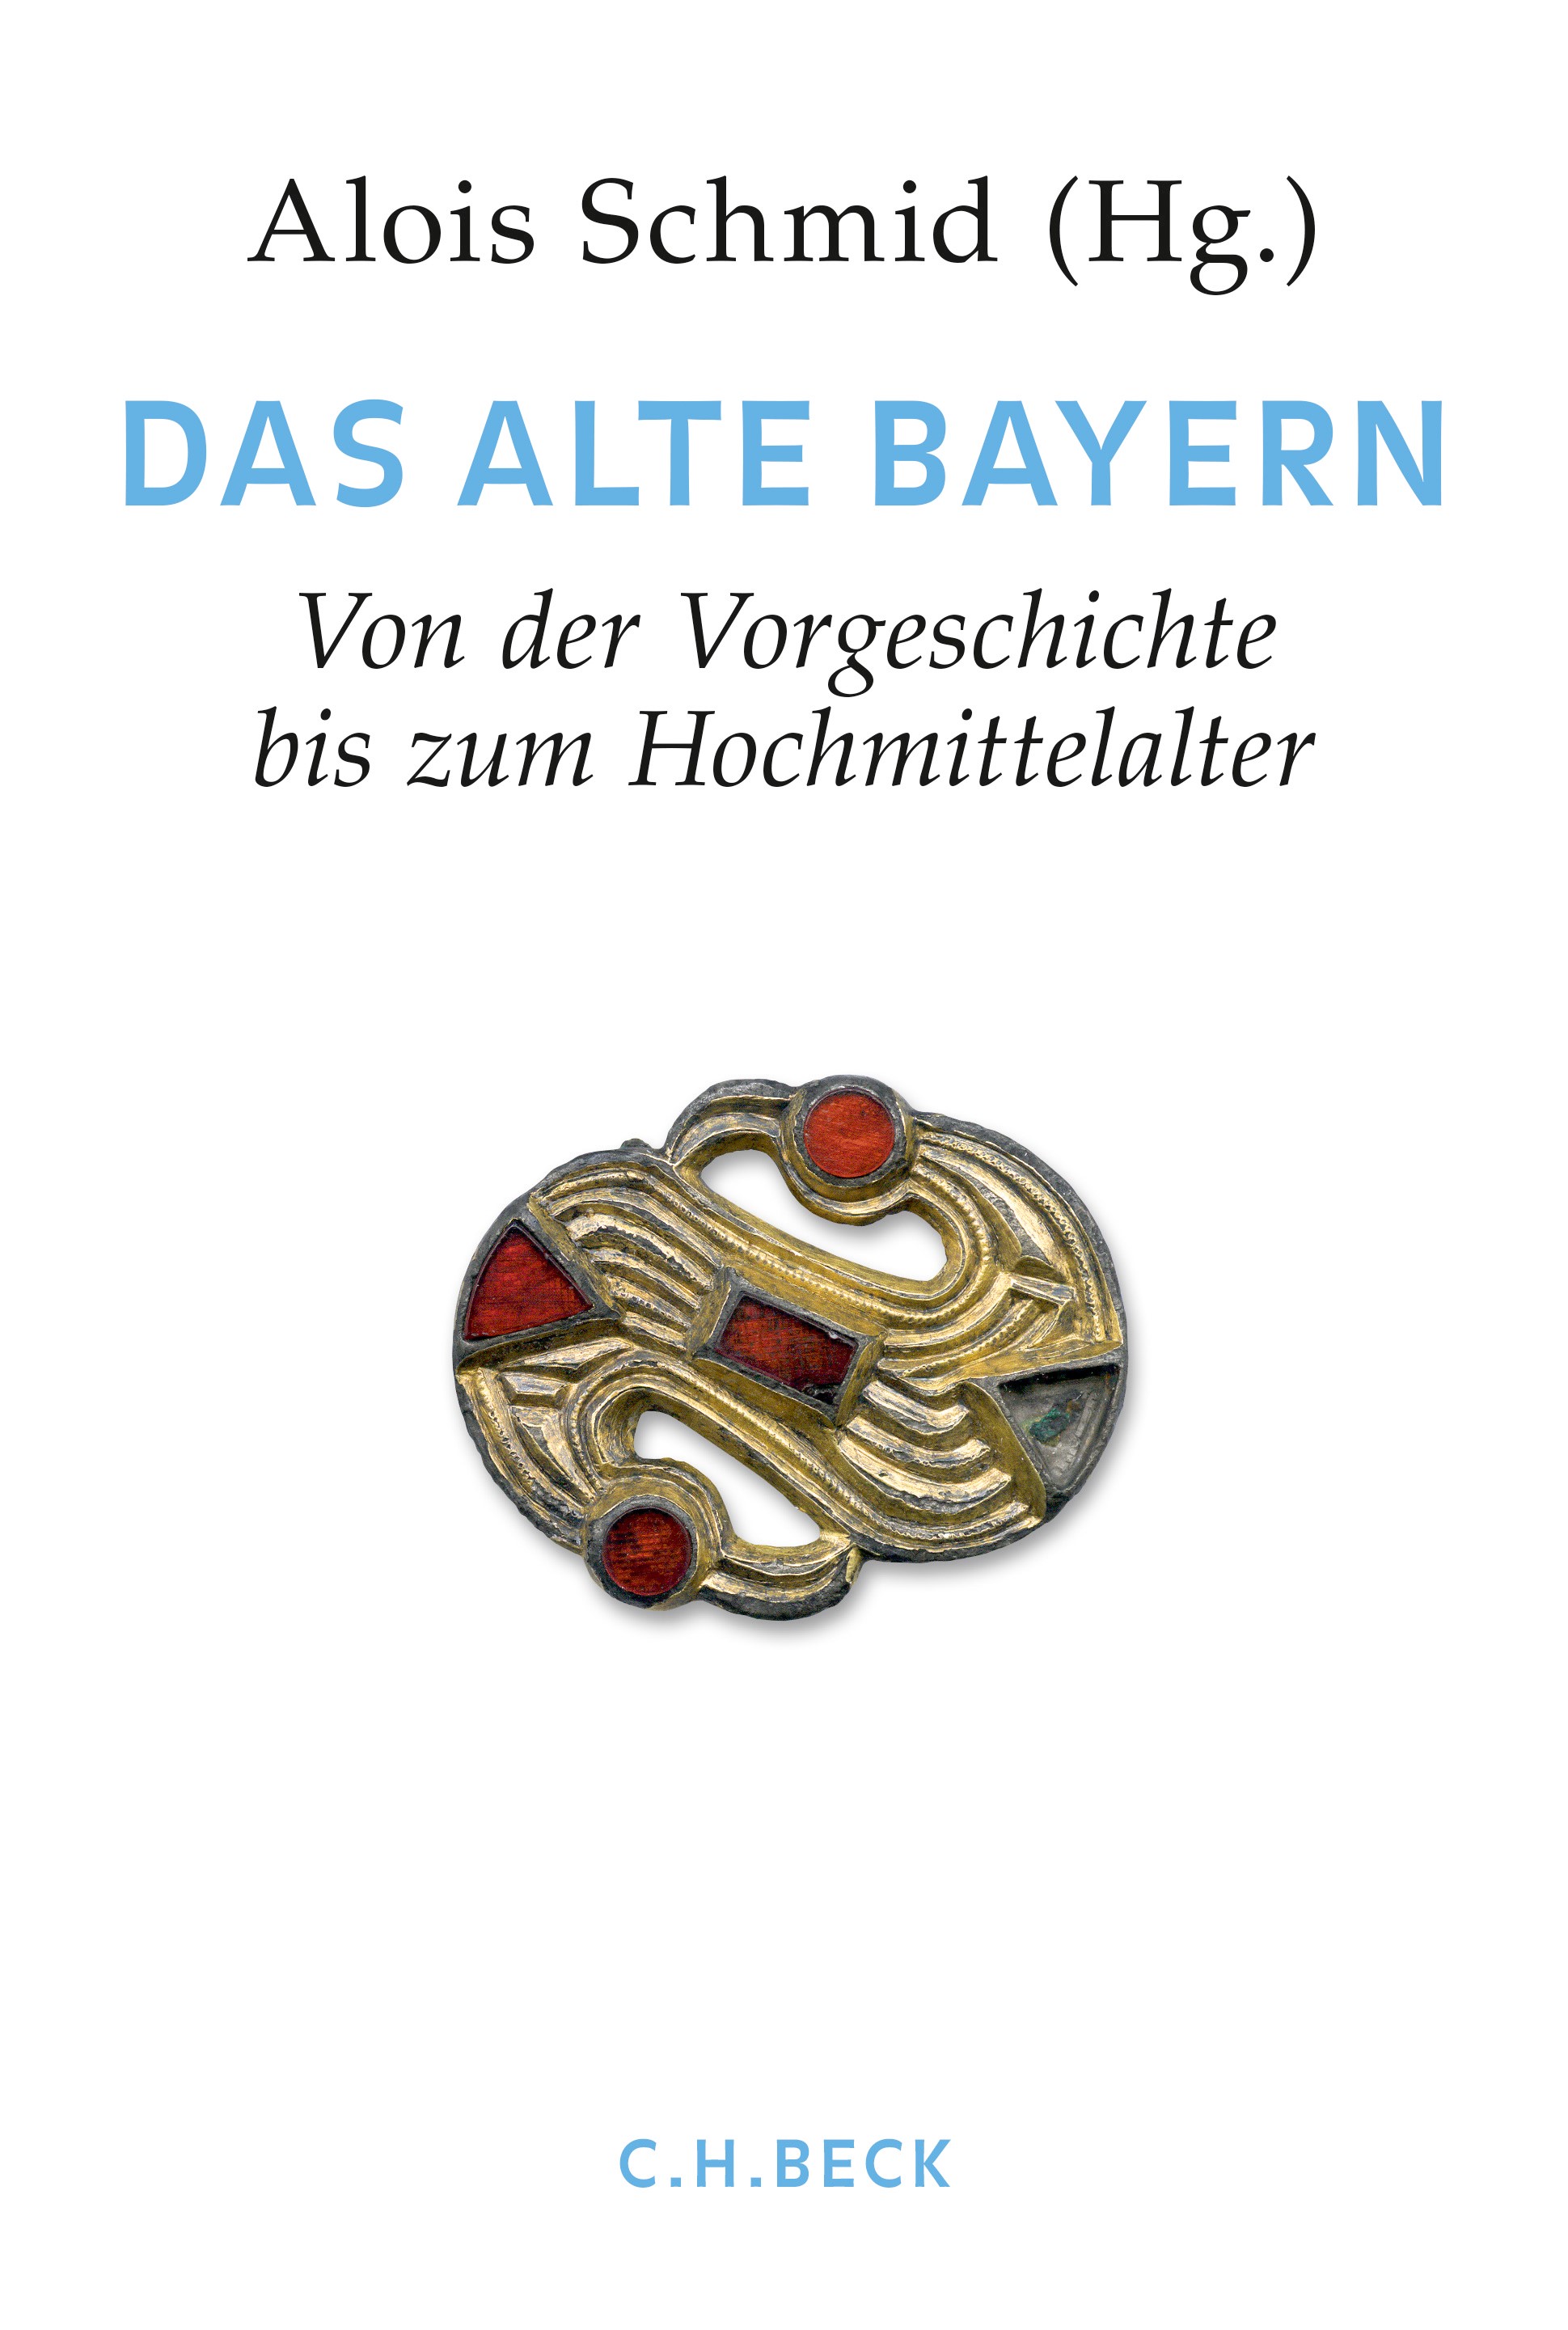 Cover: Schmid, Alois, Handbuch der bayerischen Geschichte  Bd. I: Das Alte Bayern